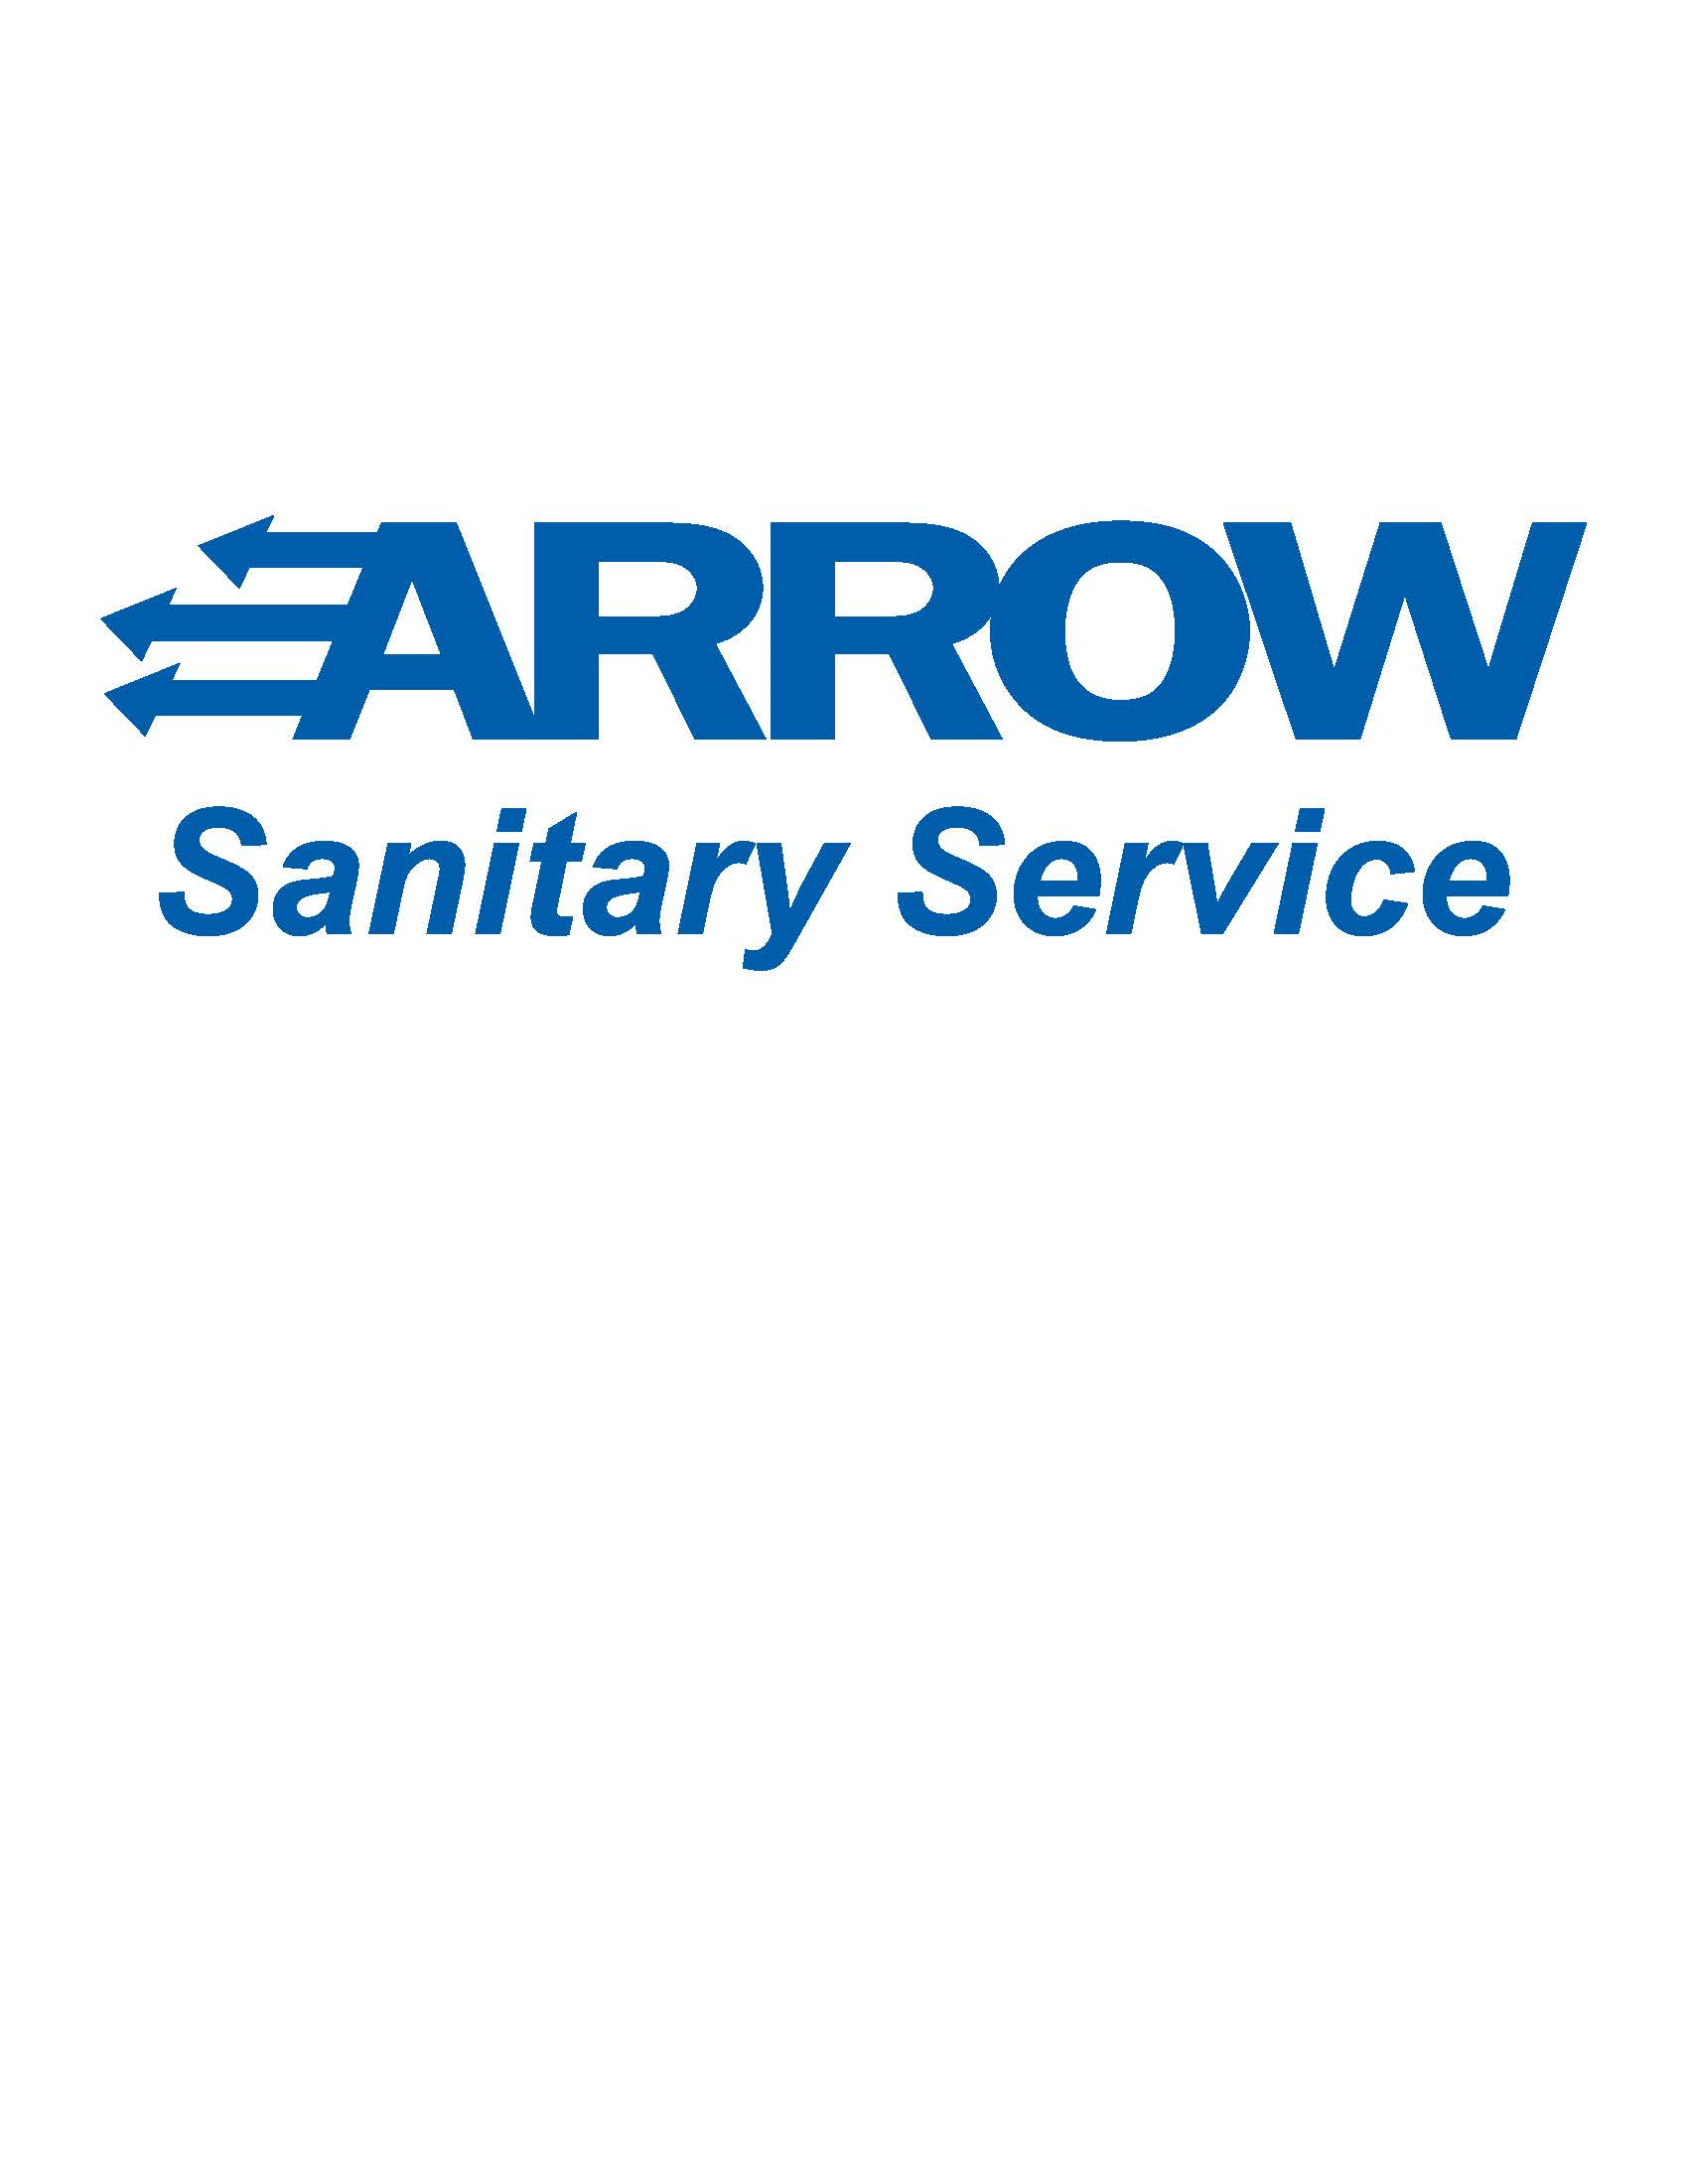 Arrow Sanitary Service Company Logo